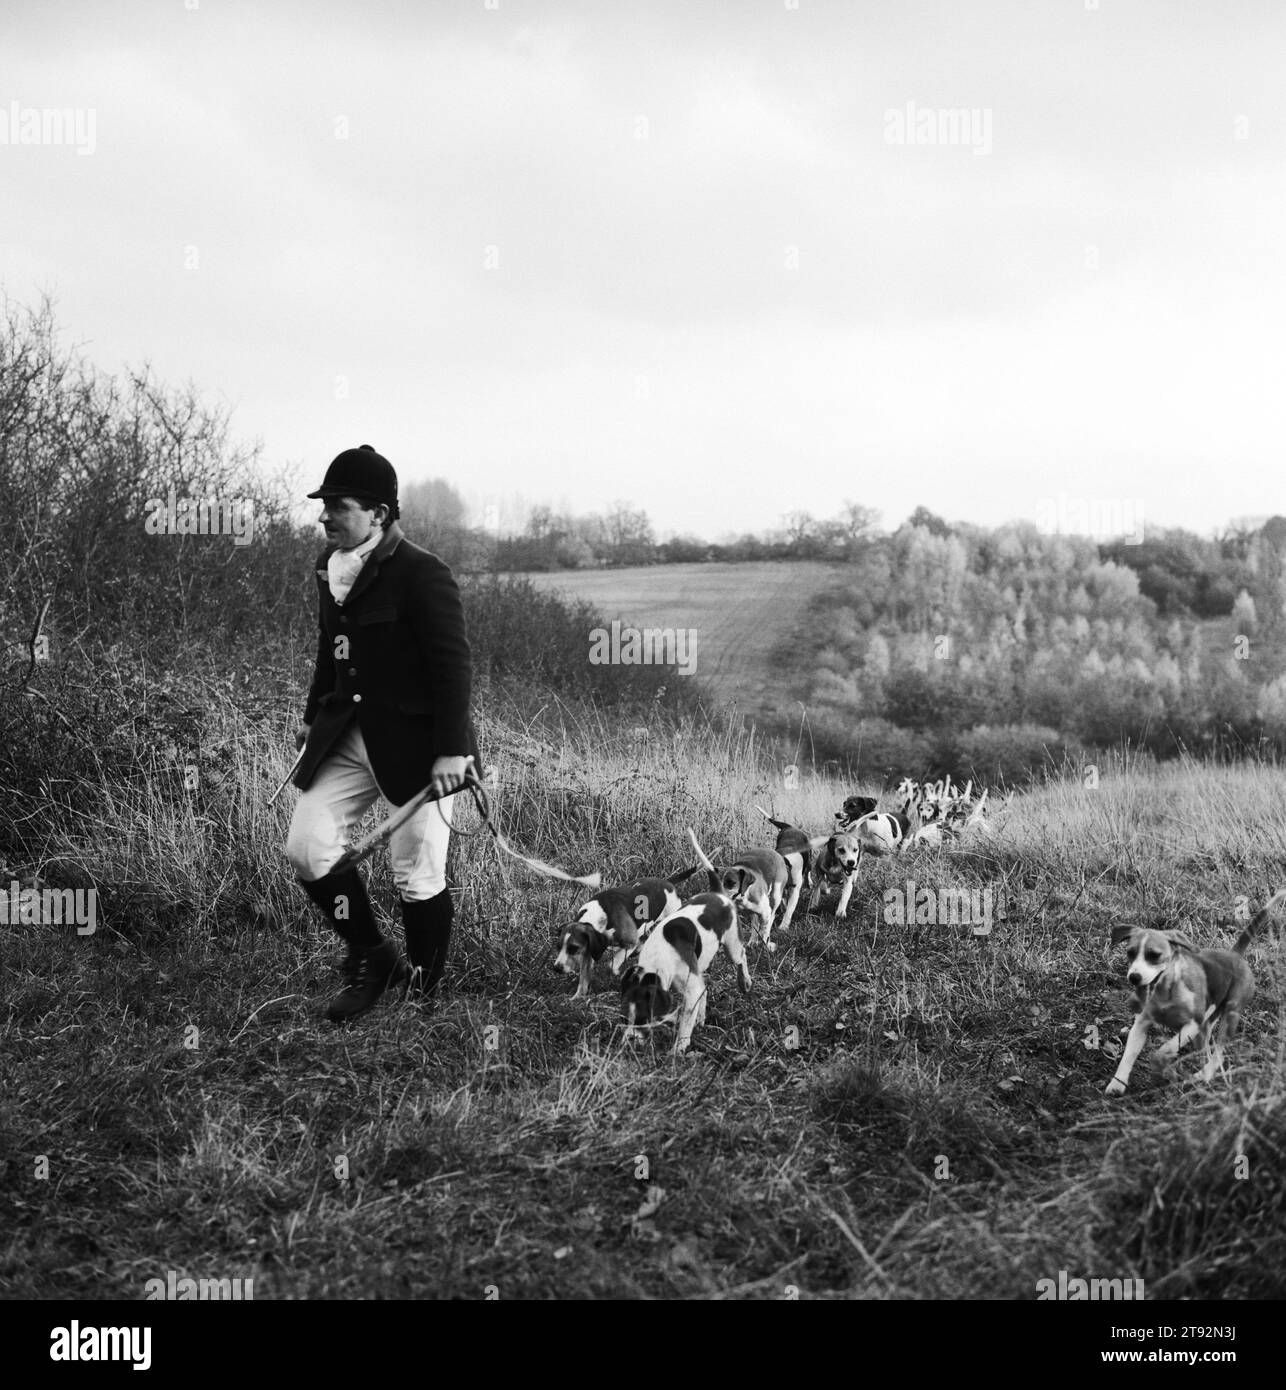 Beagling caccia lepri e coniglio UK. I Dummer Beagles a Manor Farm, i Beagles cacciano lepri e conigli, i seguaci seguono a piedi - camminando. Il cacciatore e il servo della caccia e forse un paio di altri seguaci molto in forma corrono. Steven Duckmanton l'Huntsman e Beagles in cerca di un profumo. Icomb, Gloucestershire, Inghilterra 2002 2000s HOMER SYKES Foto Stock